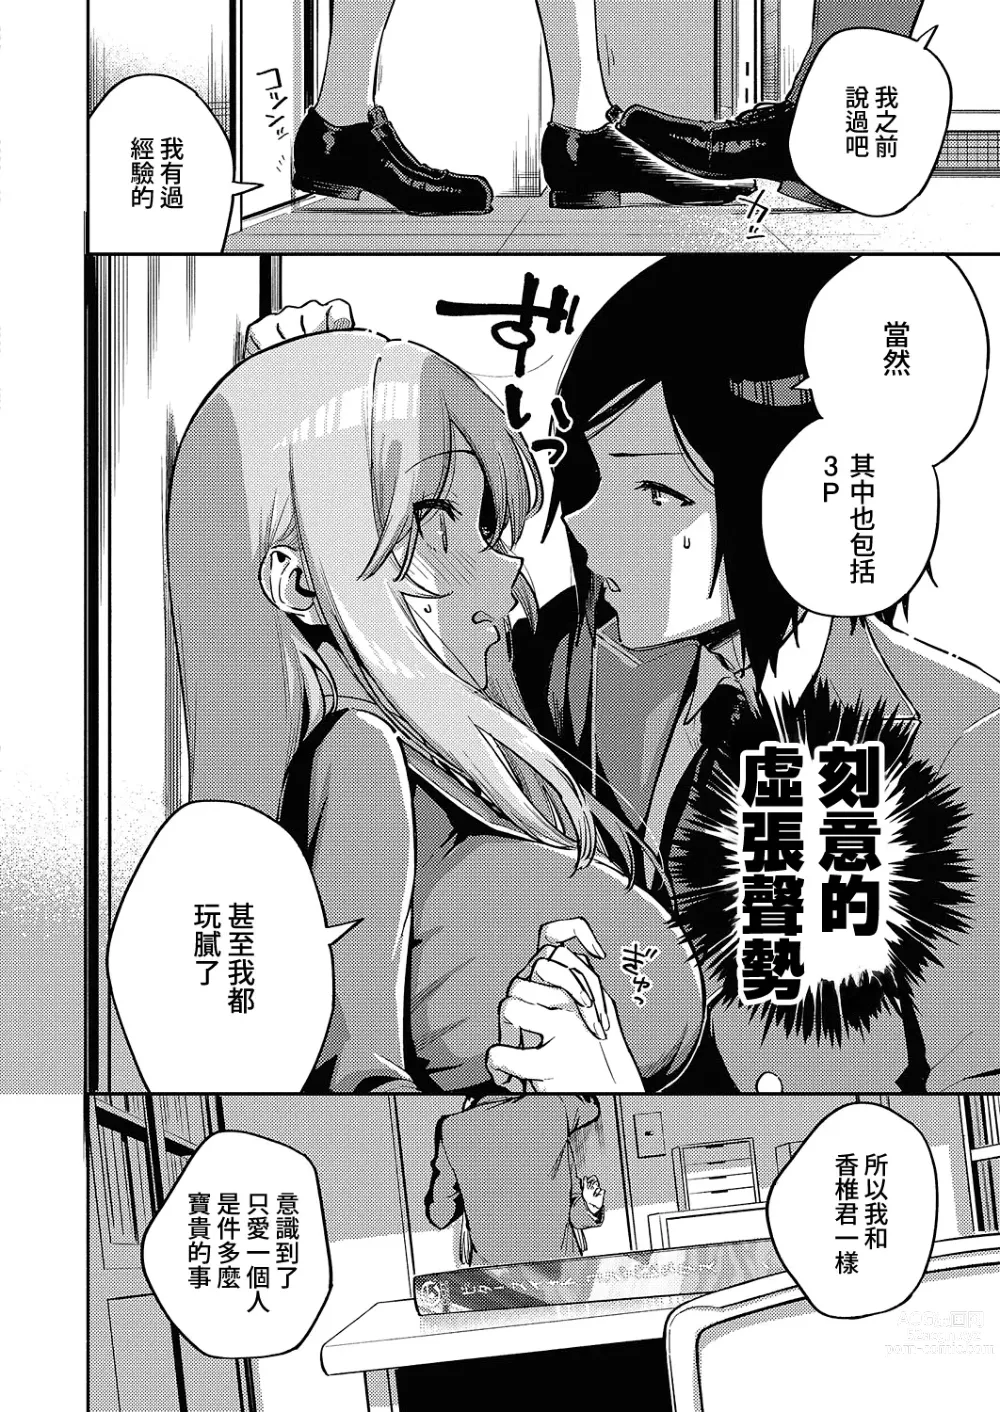 Page 6 of manga 風紀危害RE